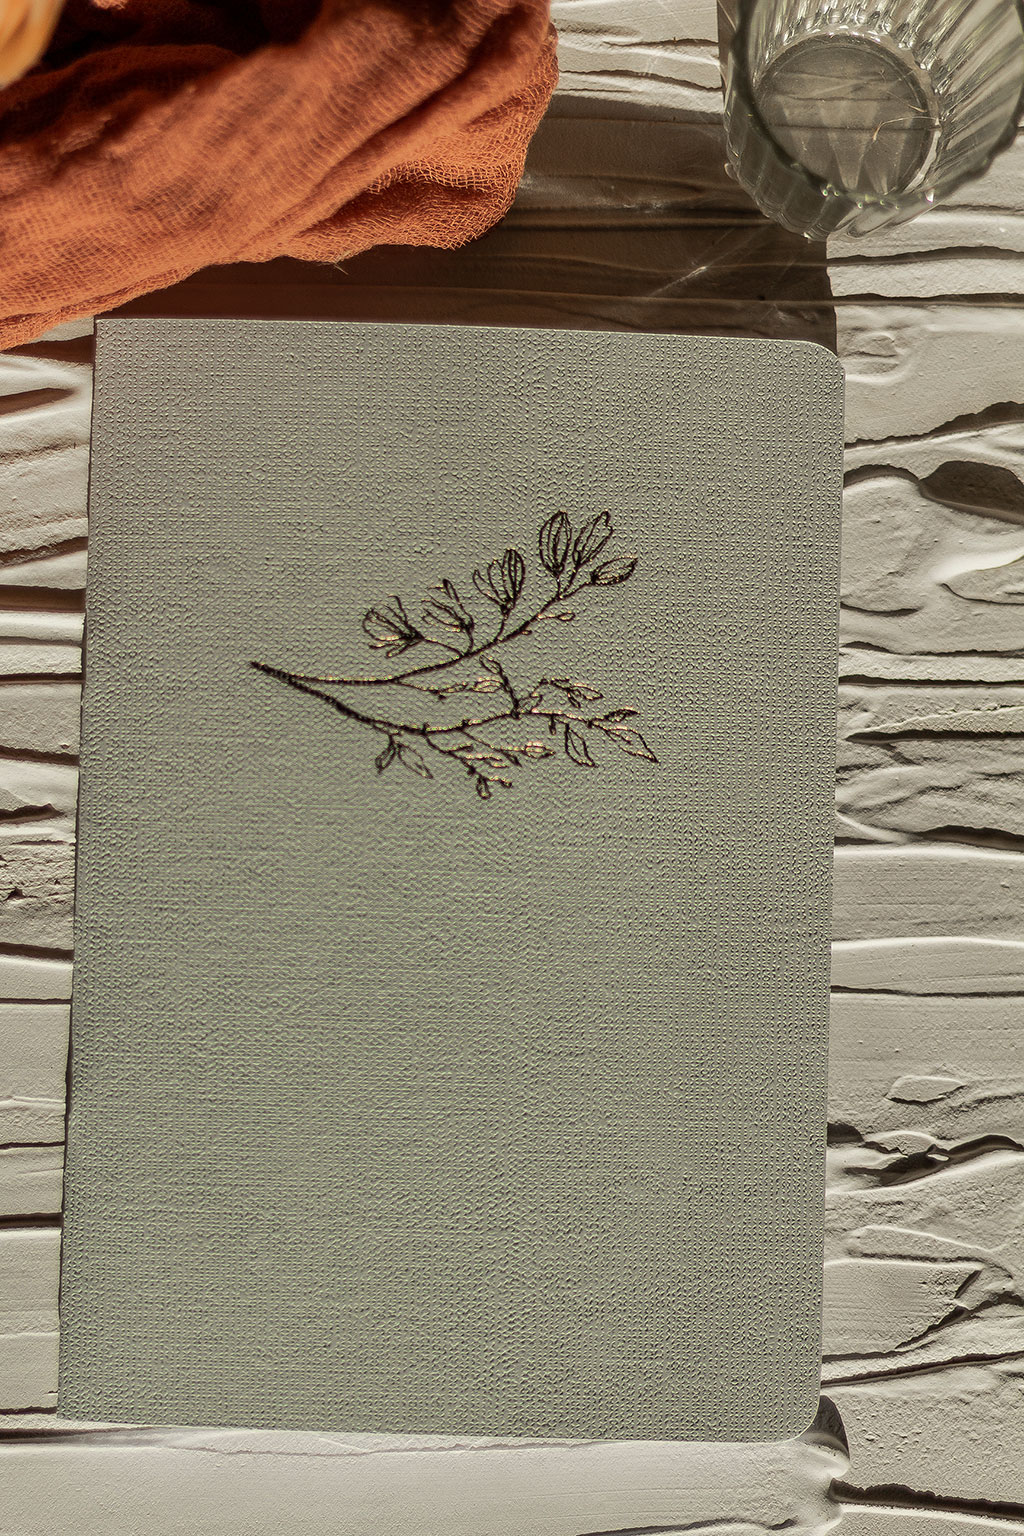 Vászonfelületű kartonból készített füzet arany virággal prégelve: A/5, 64 oldalas, pontozott vonalas, fehér belívvel, sarokkerekített, egyedi paraméterekkel is rendelhető